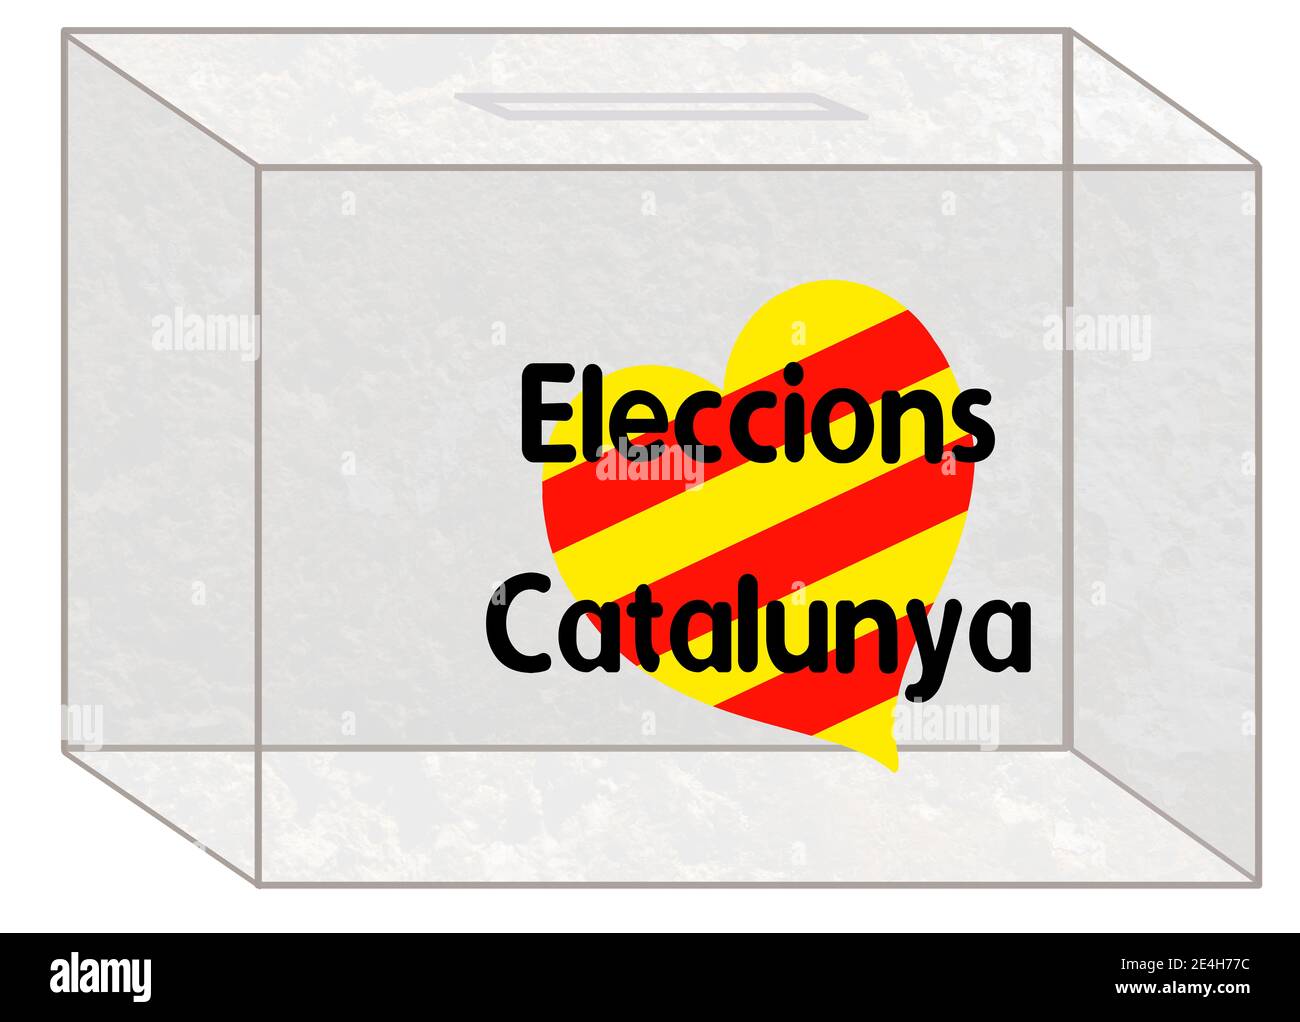 Image d'une urne pour les élections au Parlement de Catalogne en Espagne, dans laquelle il y a un coeur avec le drapeau catalan Banque D'Images